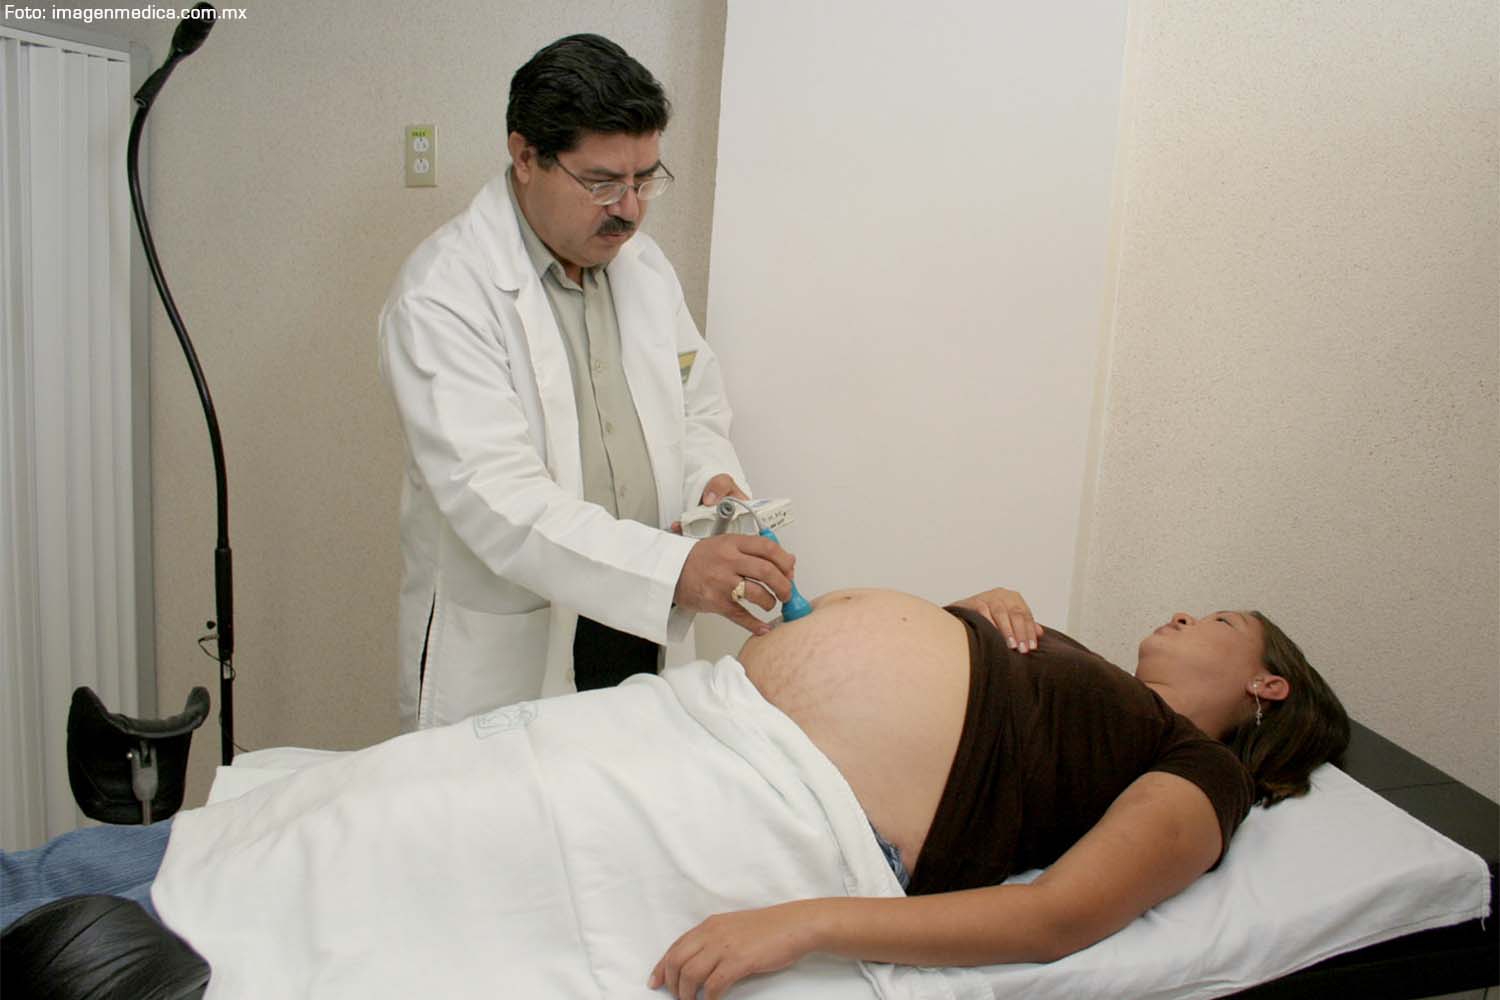 Caja cobró servicios a embarazadas en condición de morosidad, alerta la Defensoría